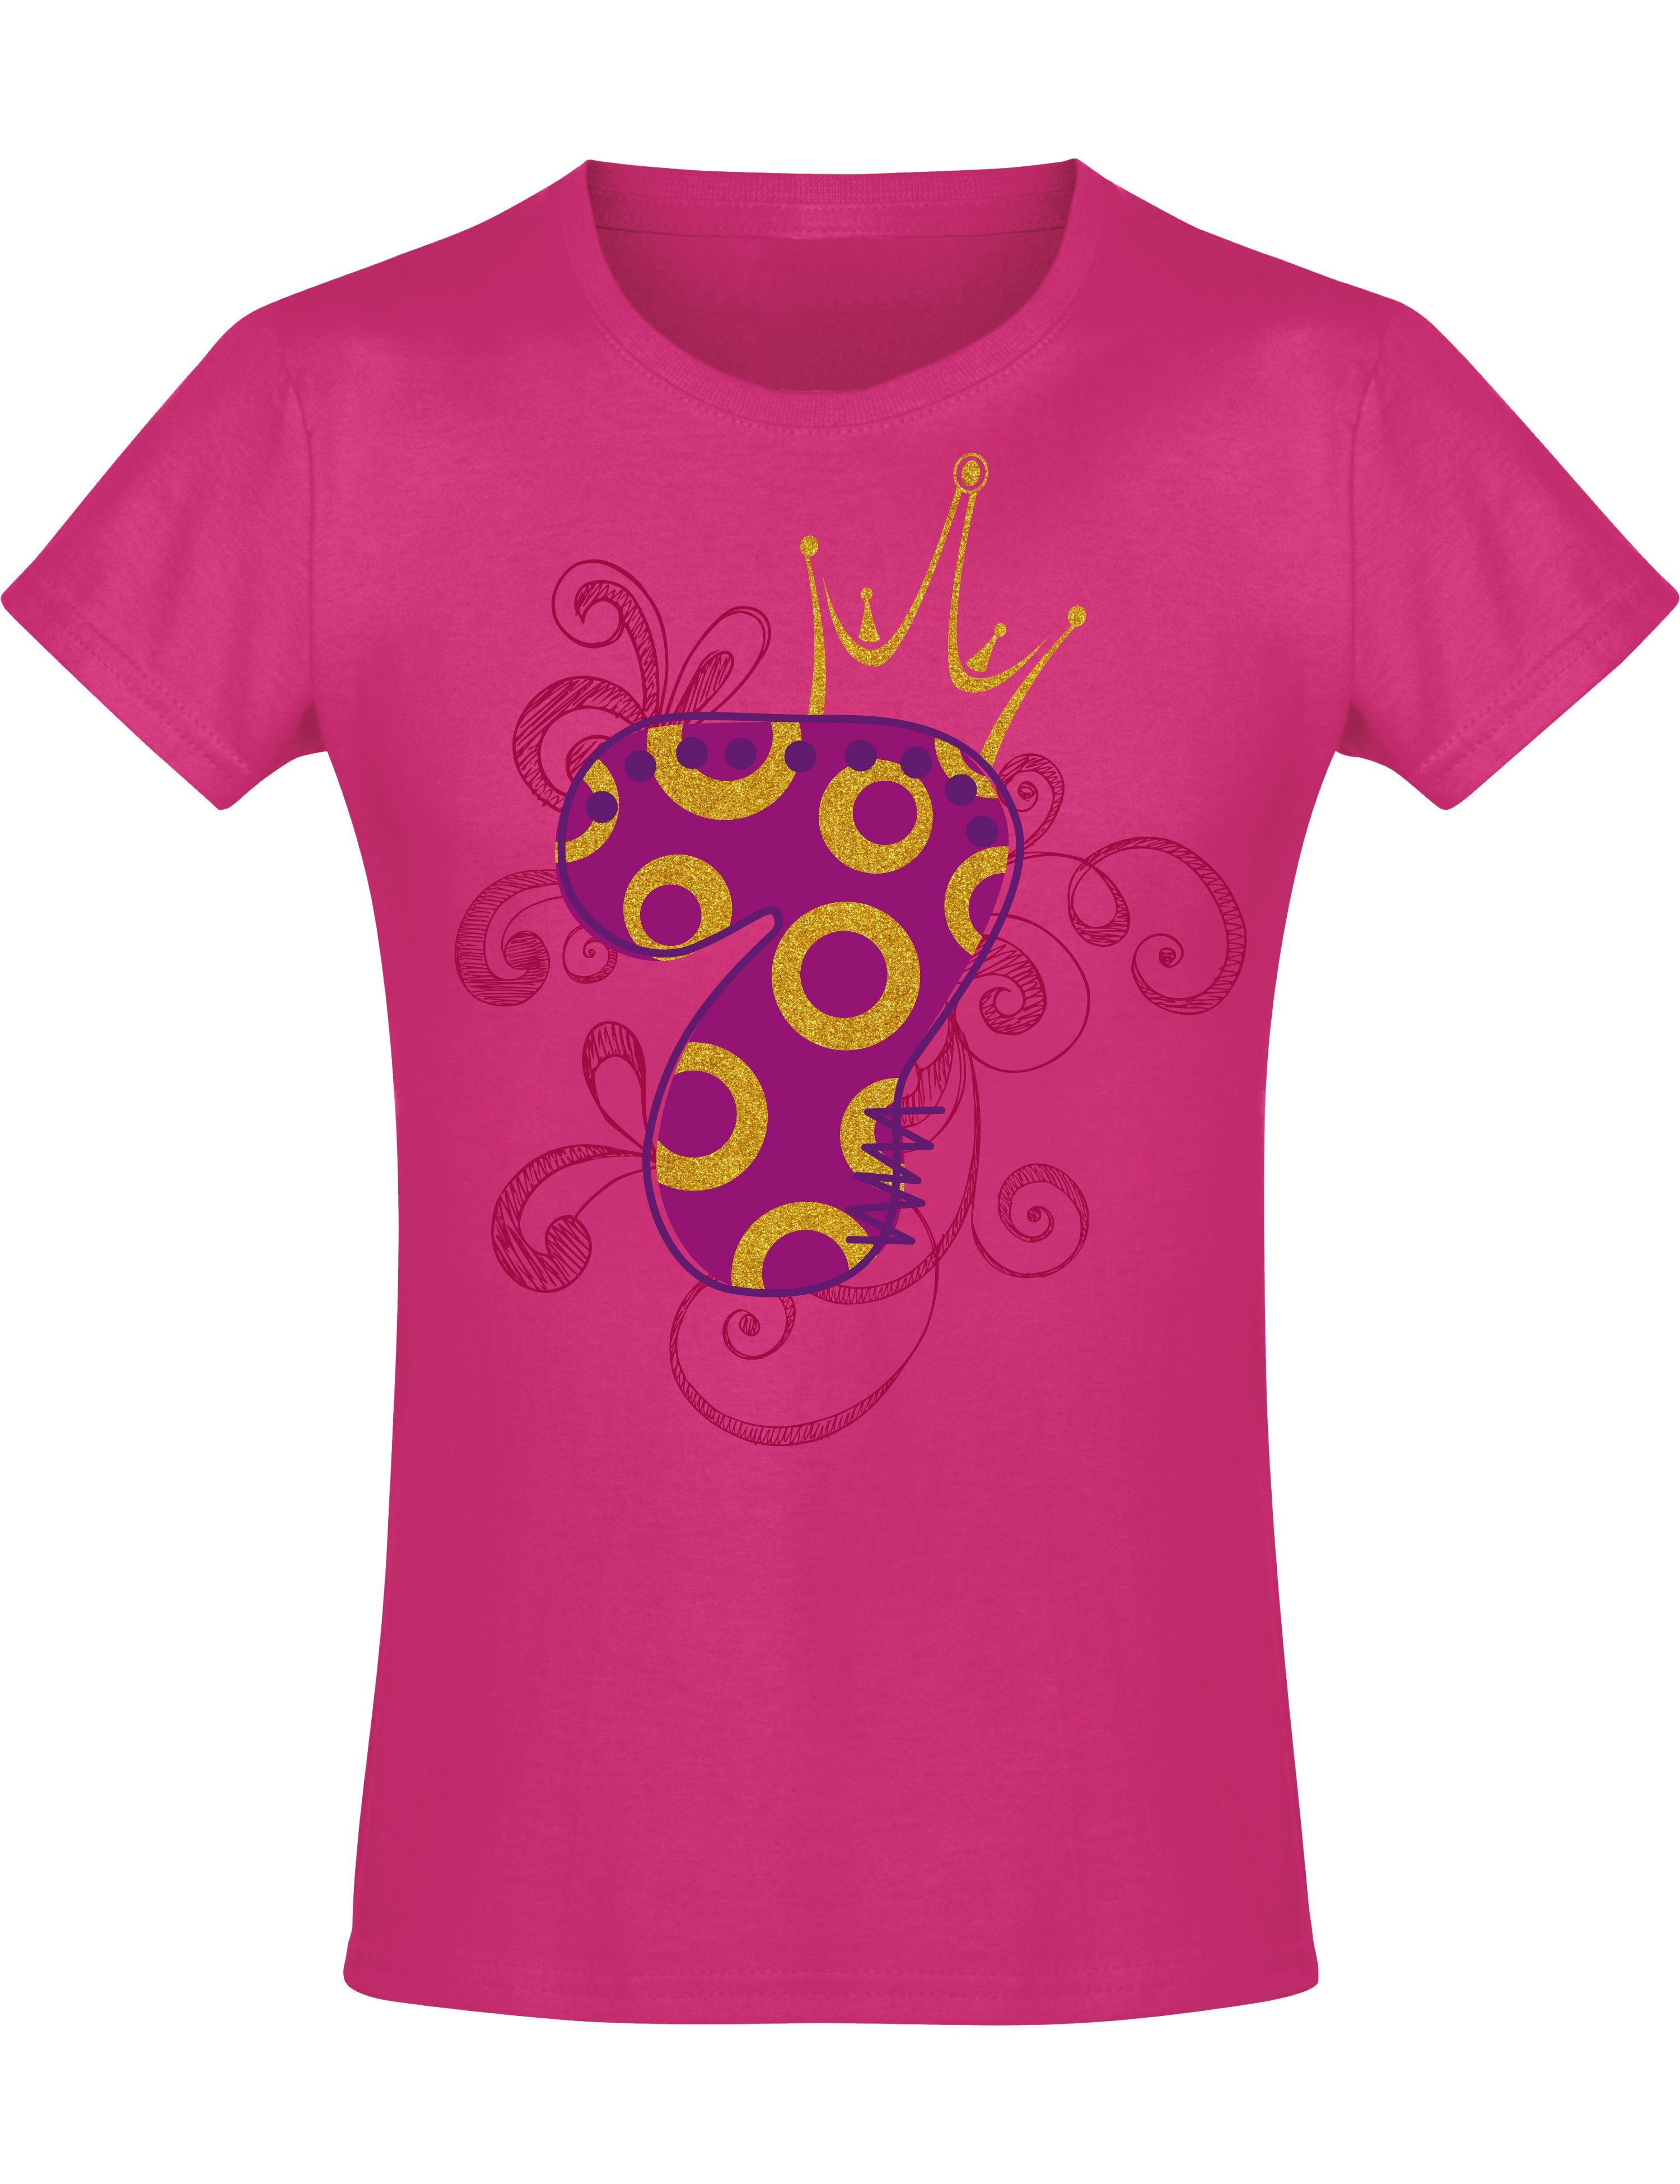 Baddery Print-Shirt Geburstagsgeschenk für Mädchen : 7 Jahre mit Krone, hochwertiger Siebdruck, aus Baumwolle